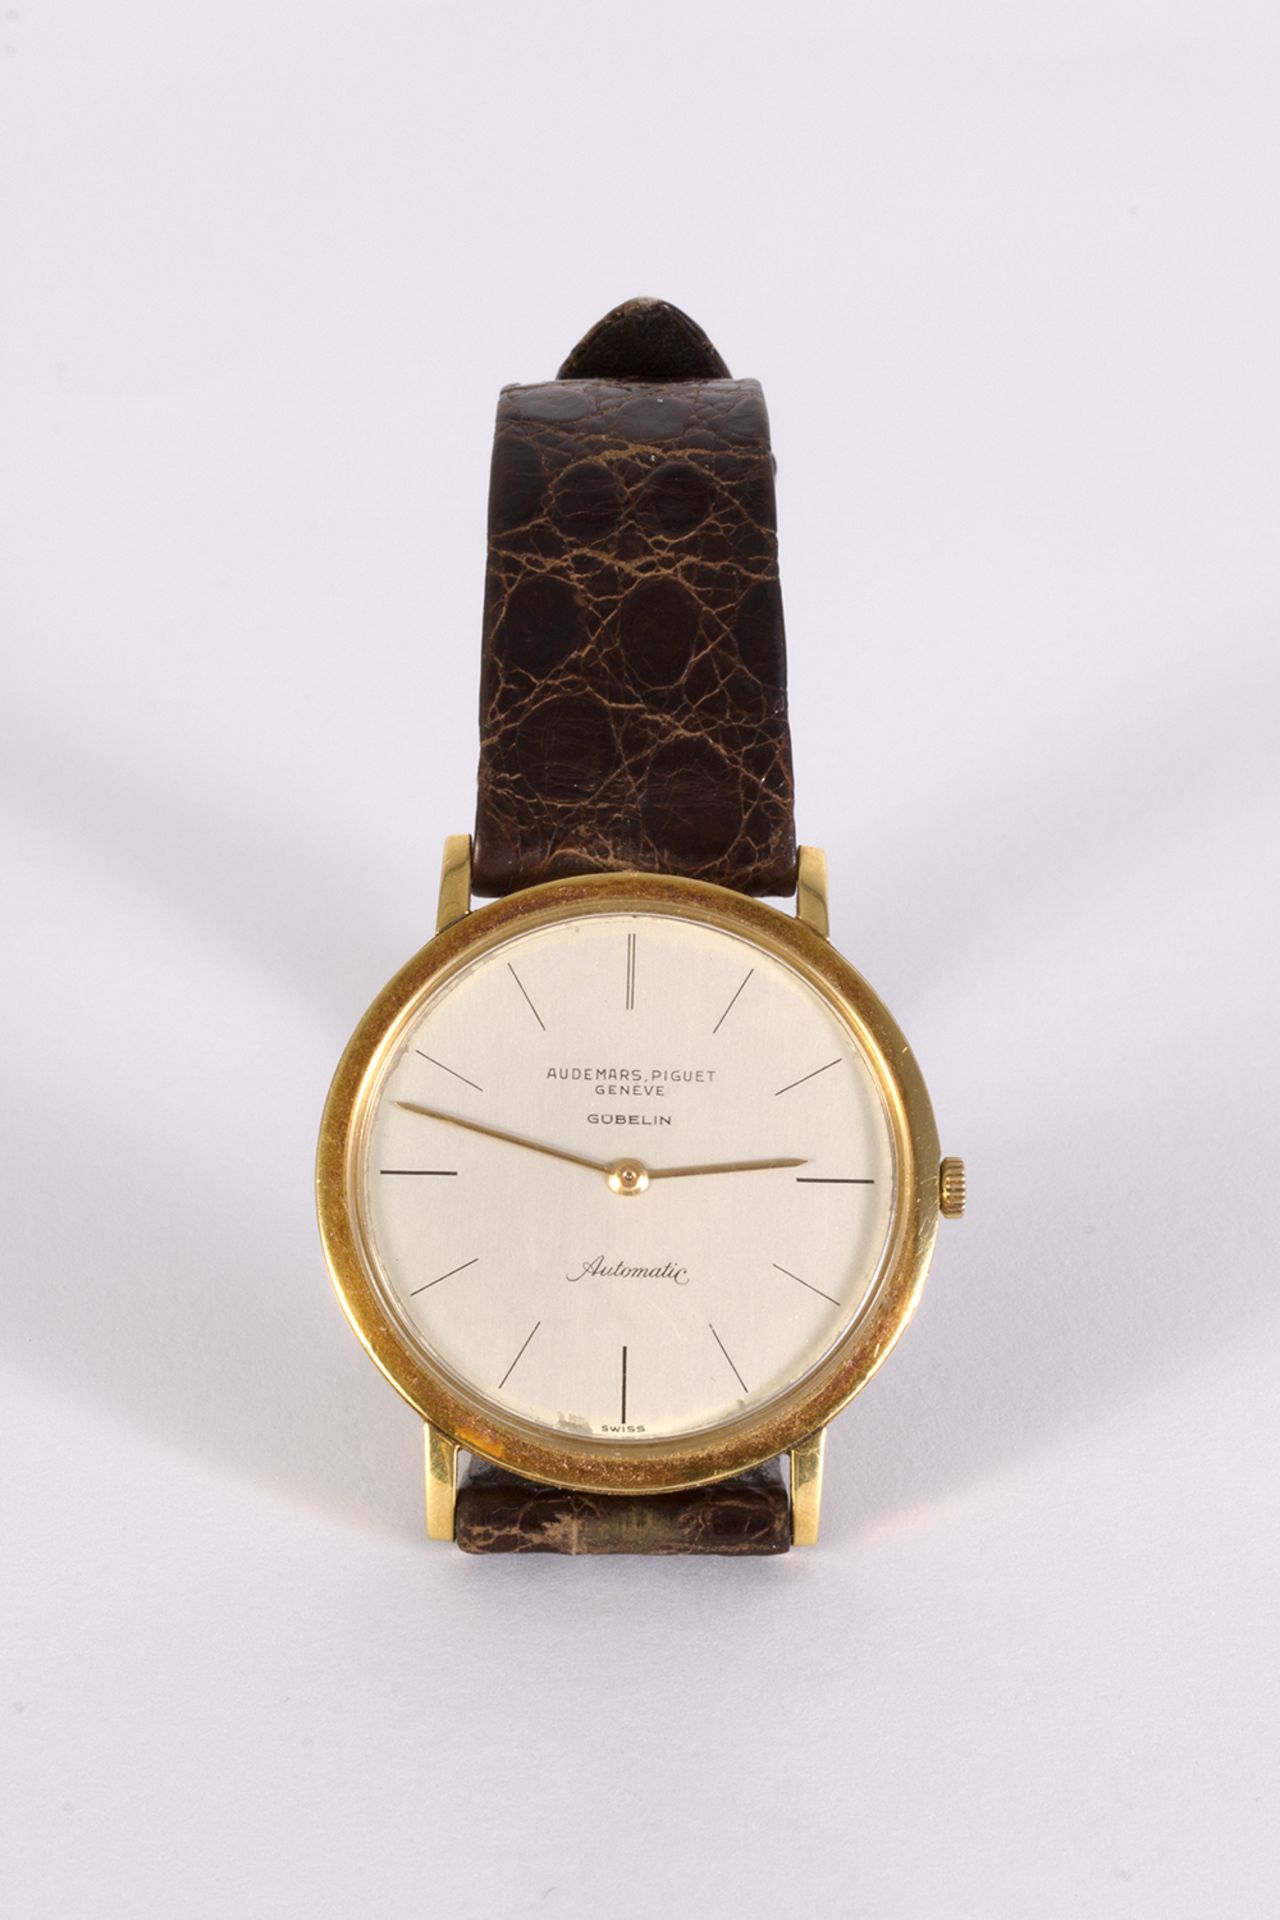 Reloj de pulsera Audemars Piguet, modelo Gübelin, en oro y correa de piel.